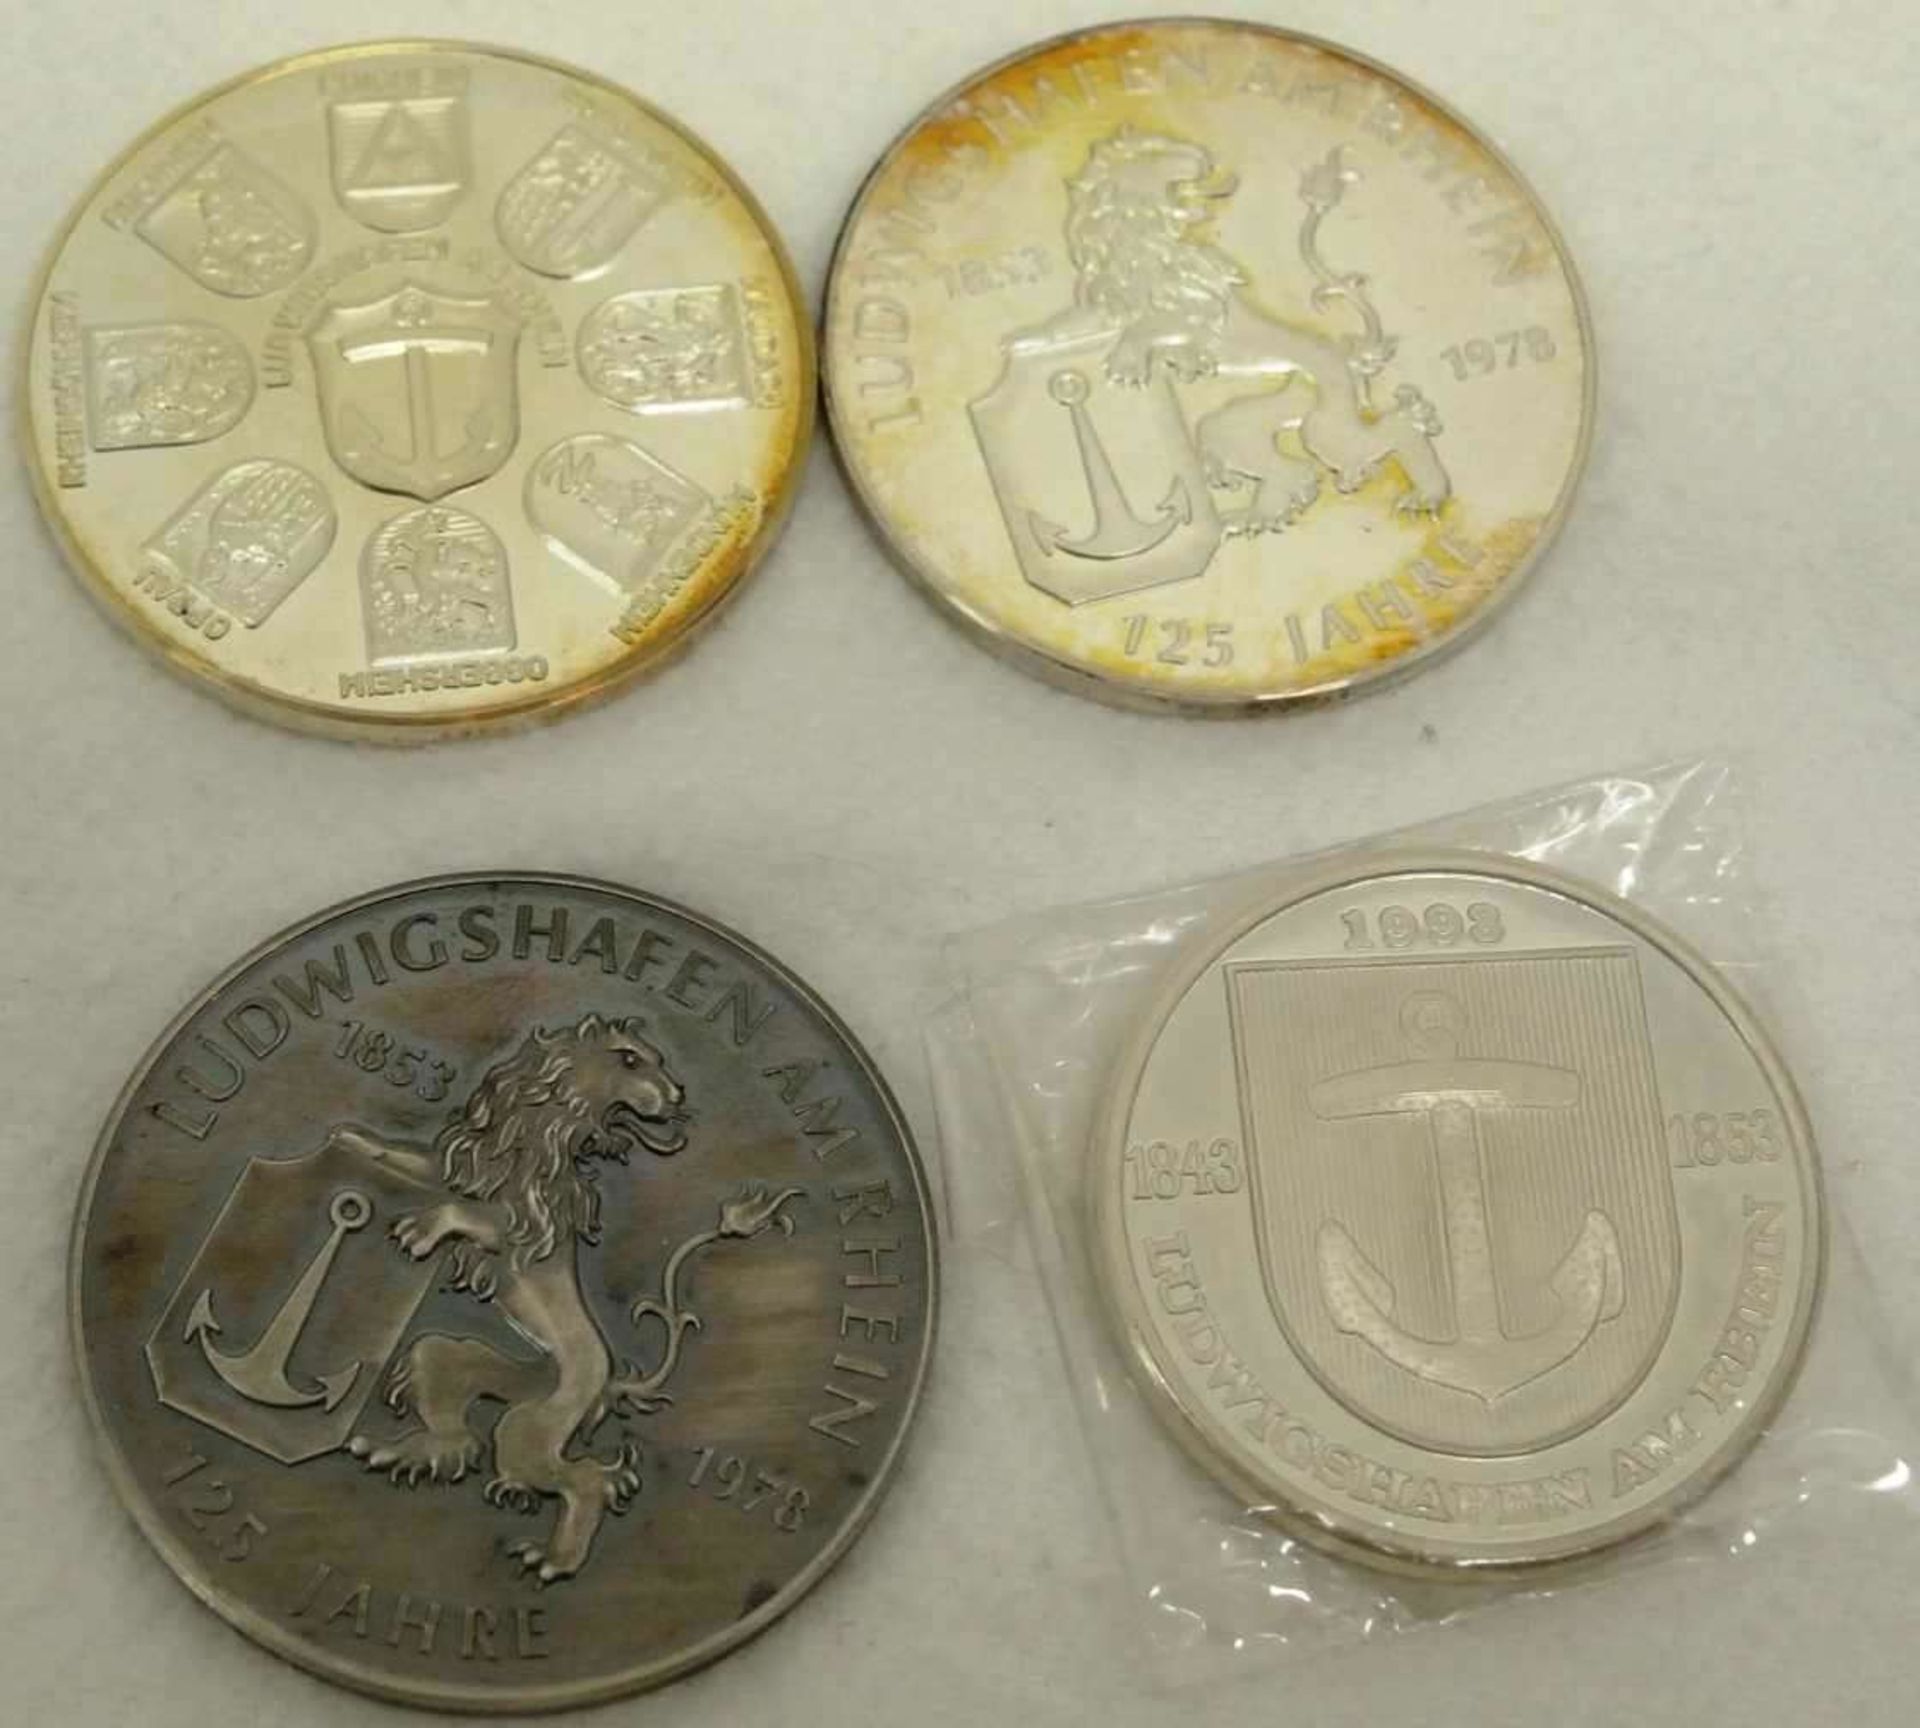 Lot Medaillen "Ludwigshafen", dabei 4x 125 Jahre Stadtrechte, sowie 3x Süddeutsche